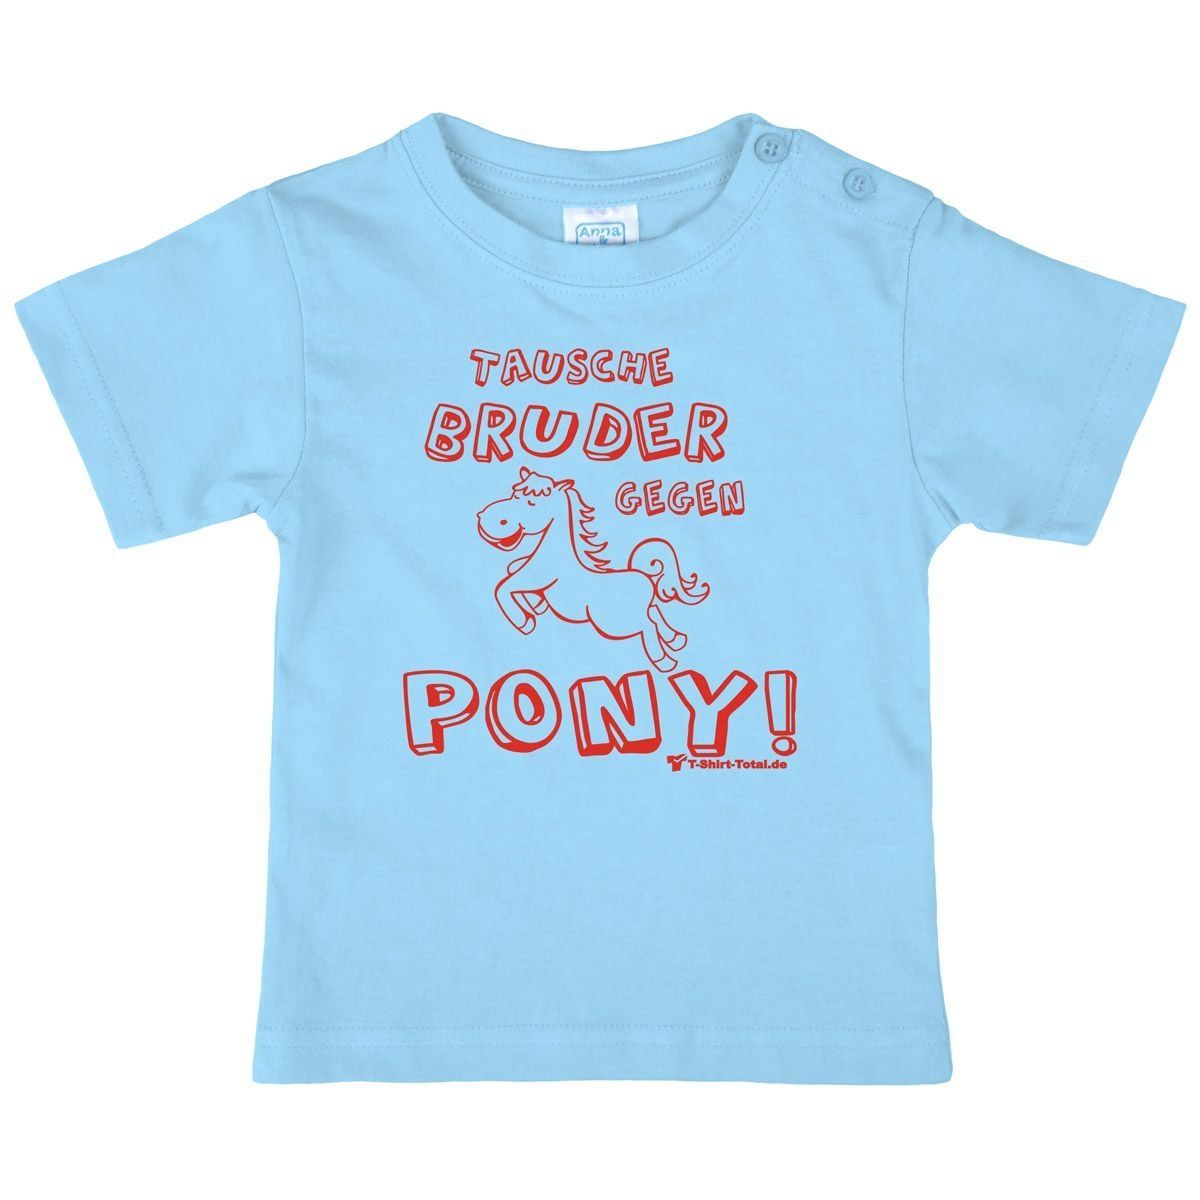 Tausche Bruder gegen Pony Kinder T-Shirt hellblau 80 / 86